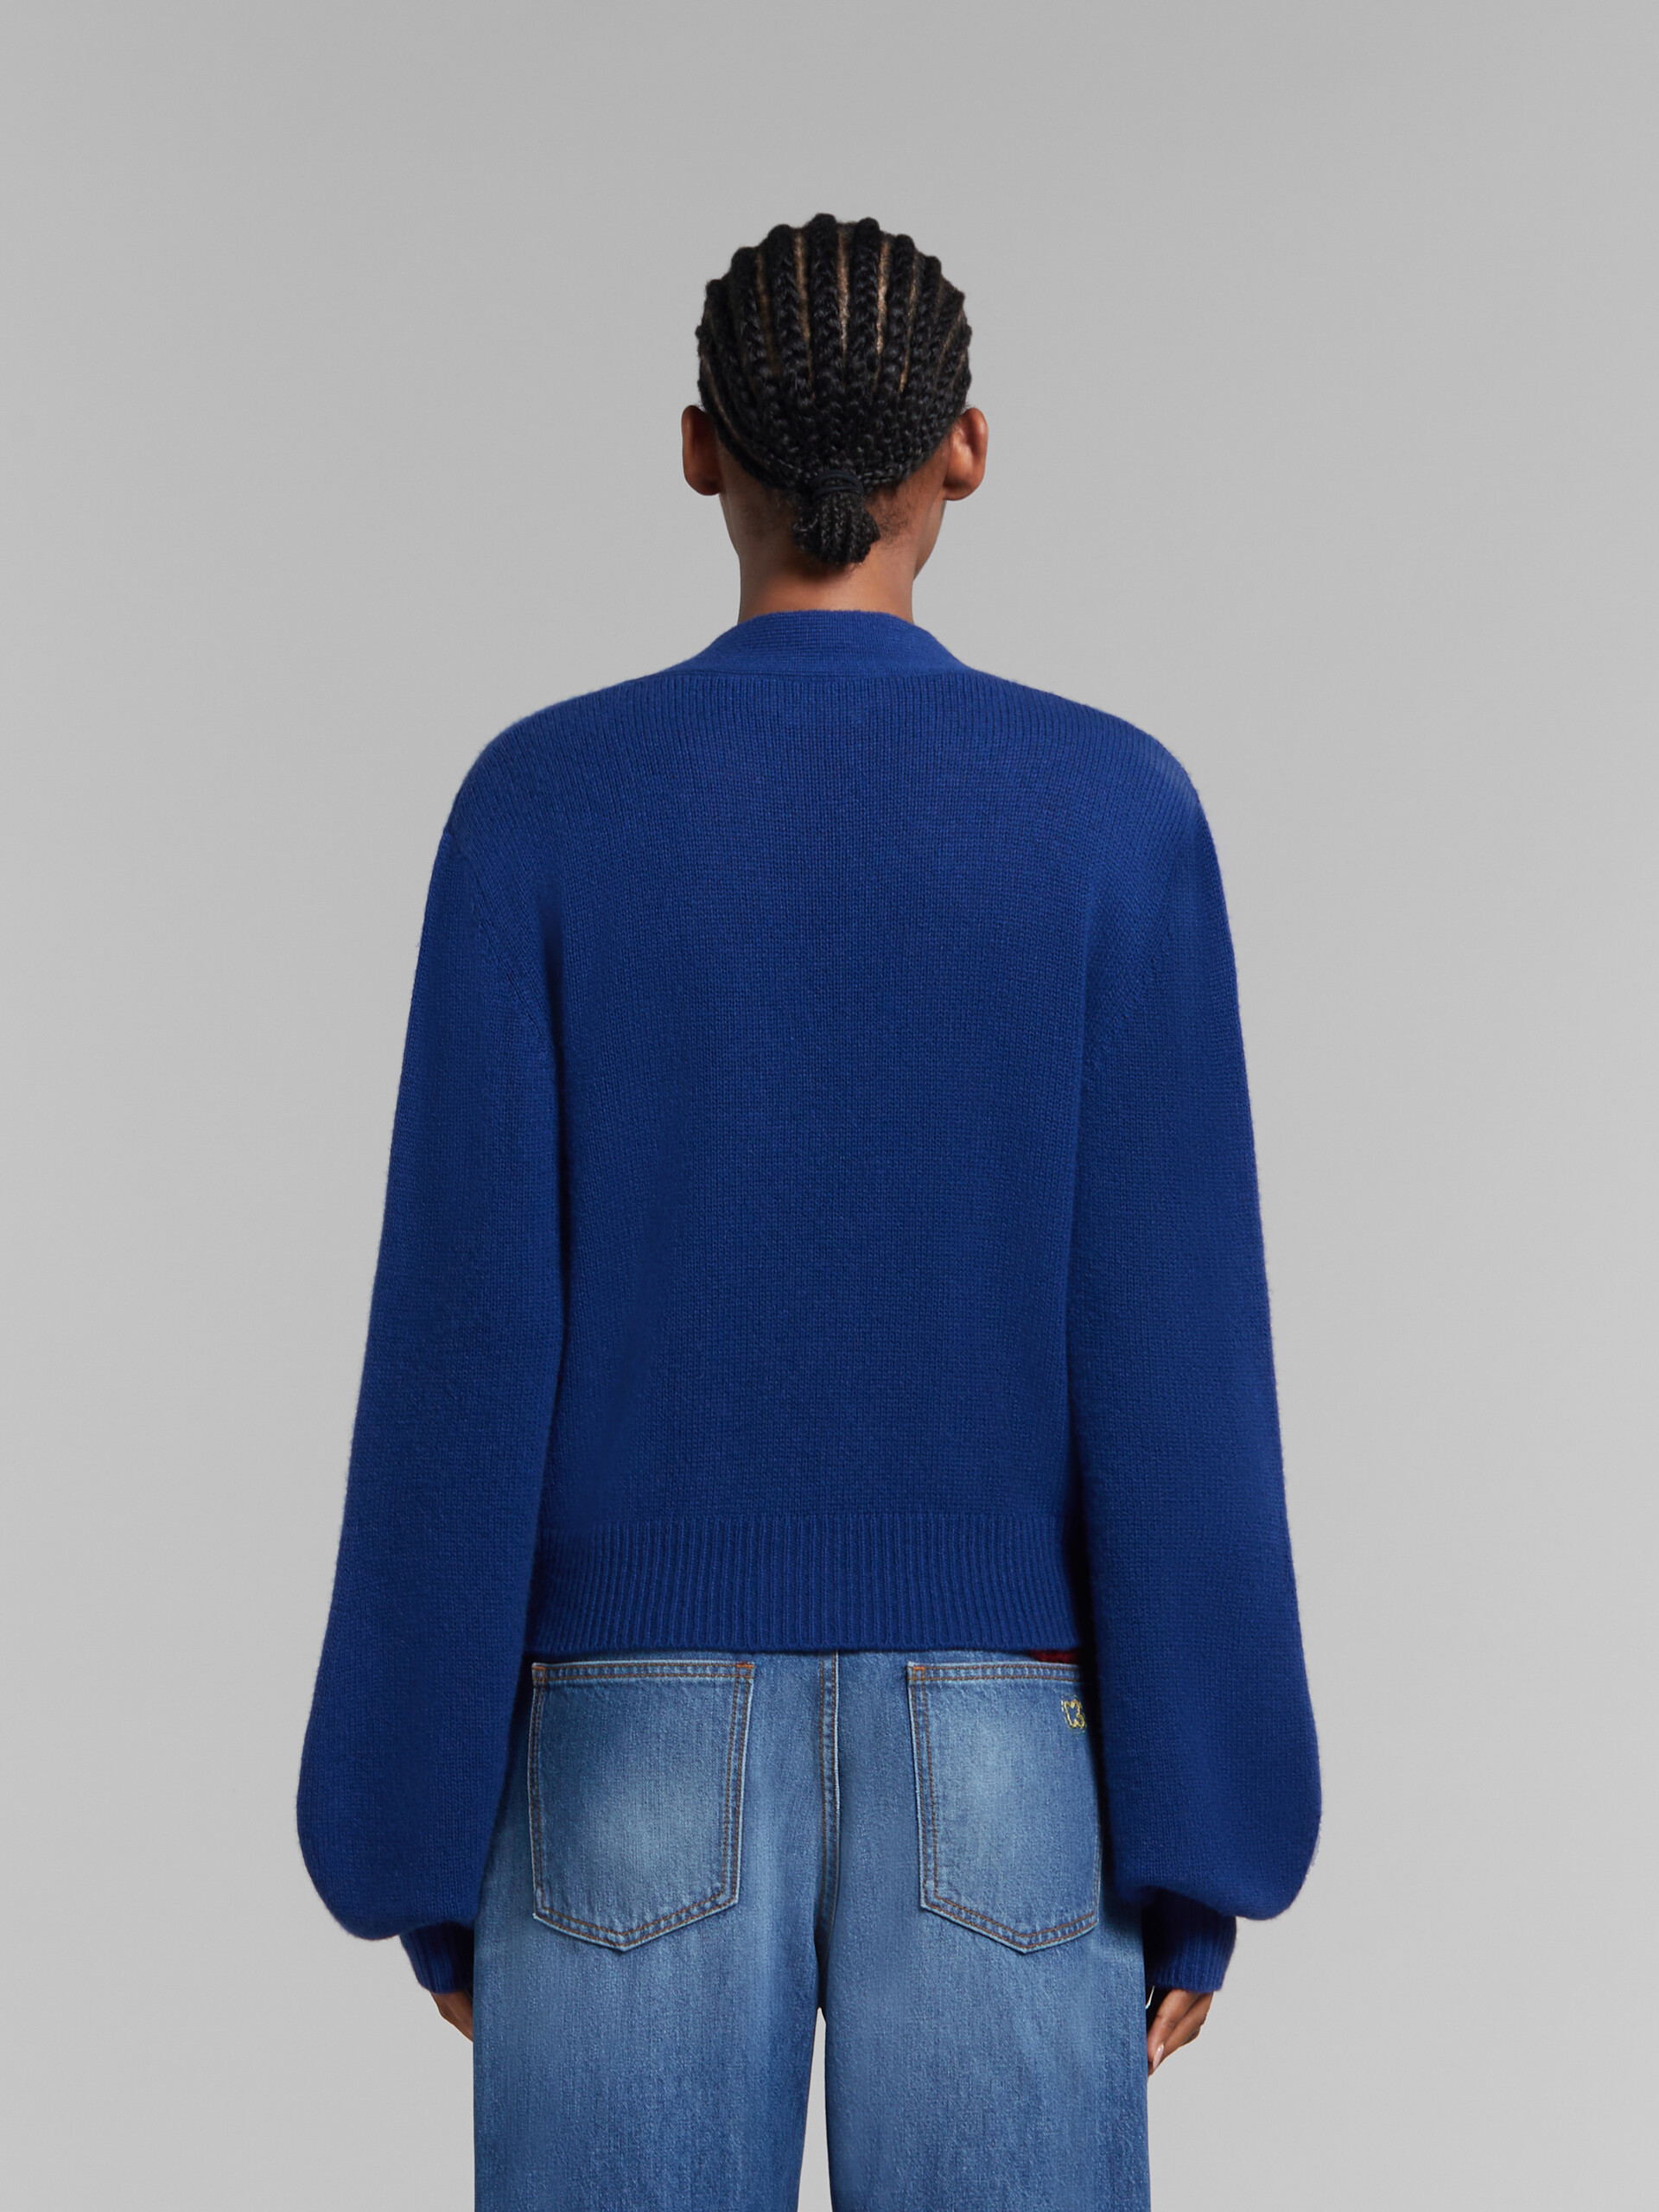 Cárdigan azul de cachemira con parche Marni efecto remiendo - jerseys - Image 3